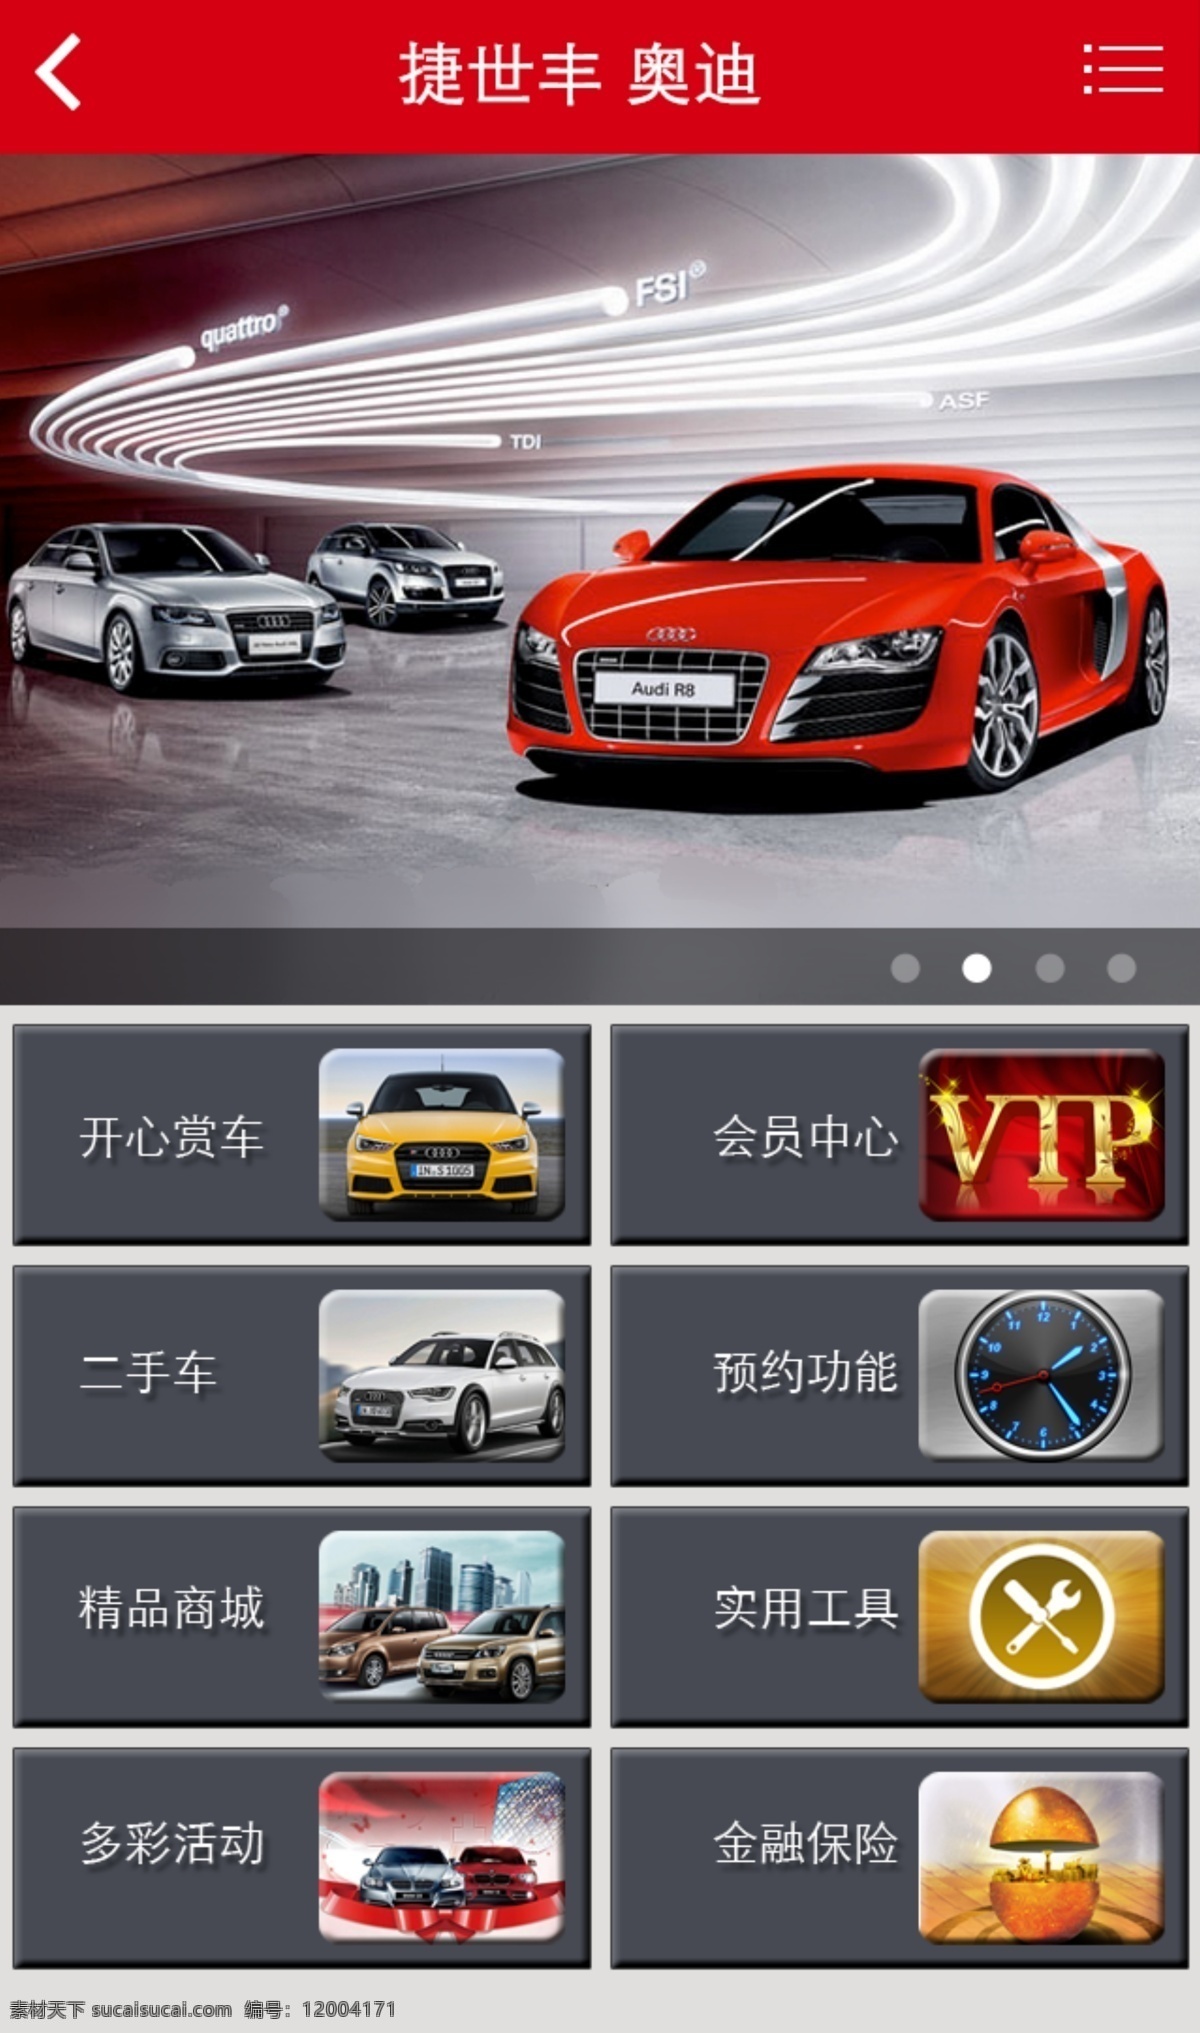 汽车免费下载 汽车美容 手机网页 汽车 app 模板 原创设计 原创网页设计